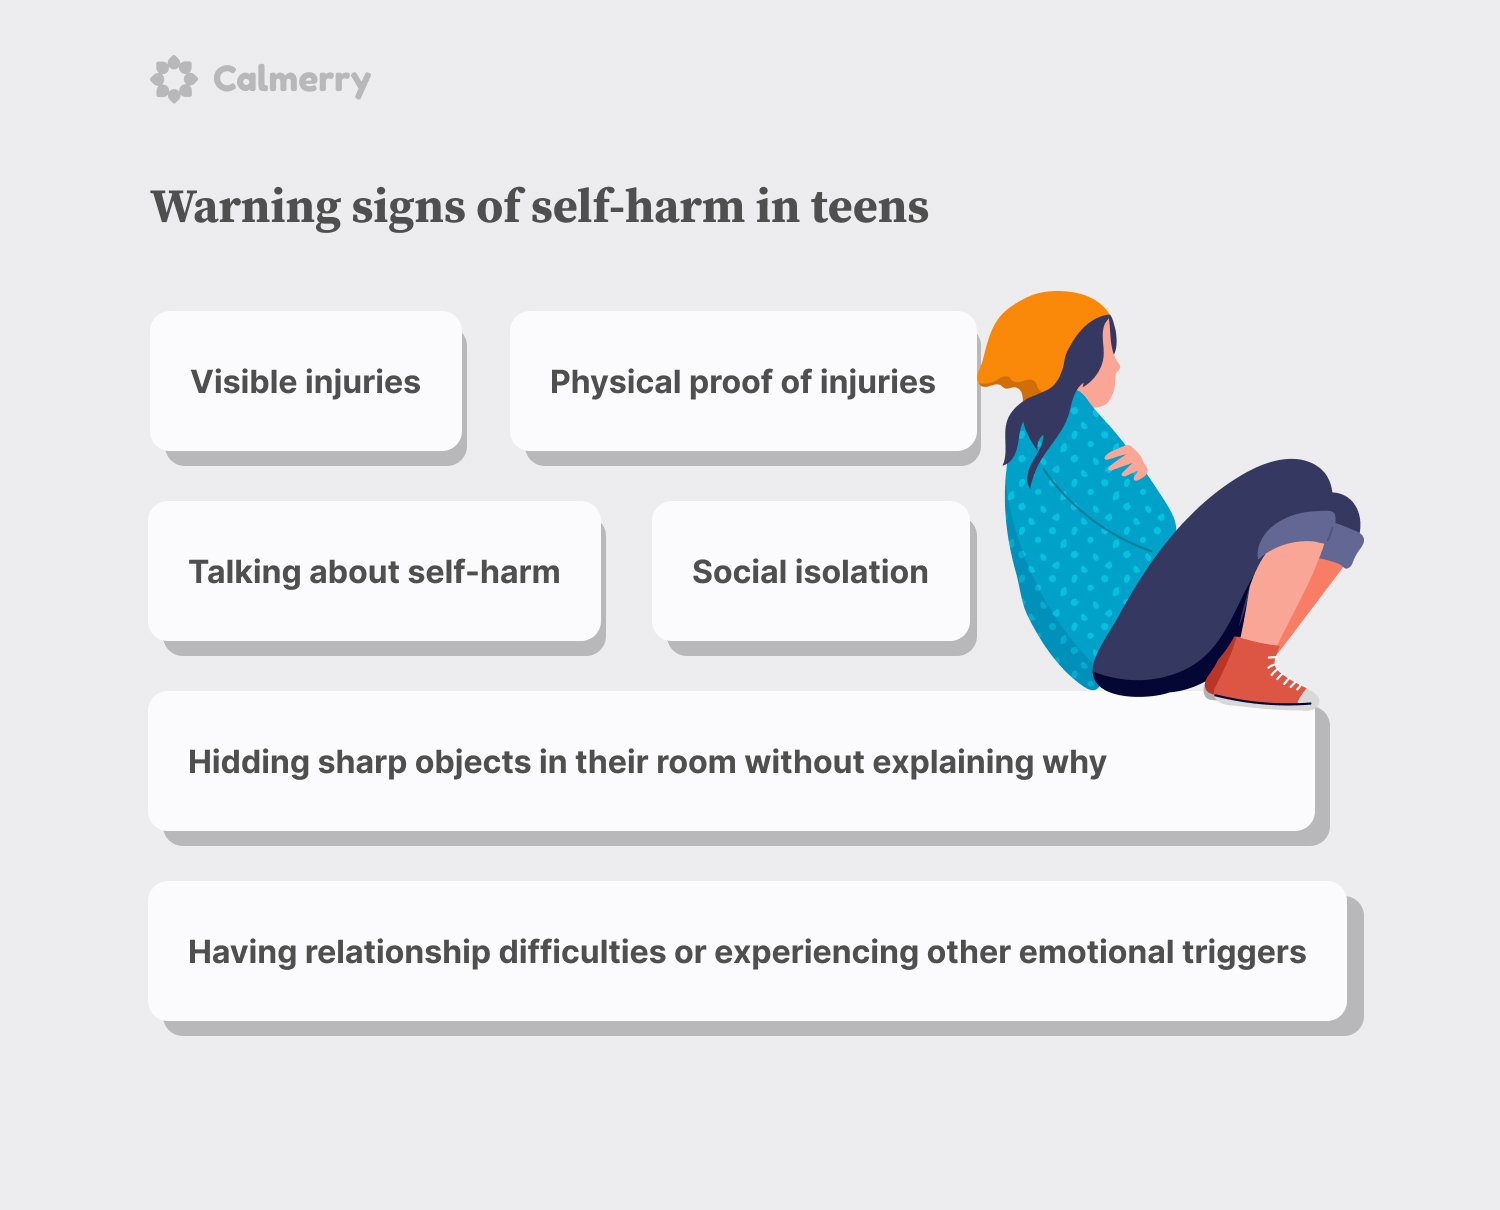 Warning signs of self-harm in teens